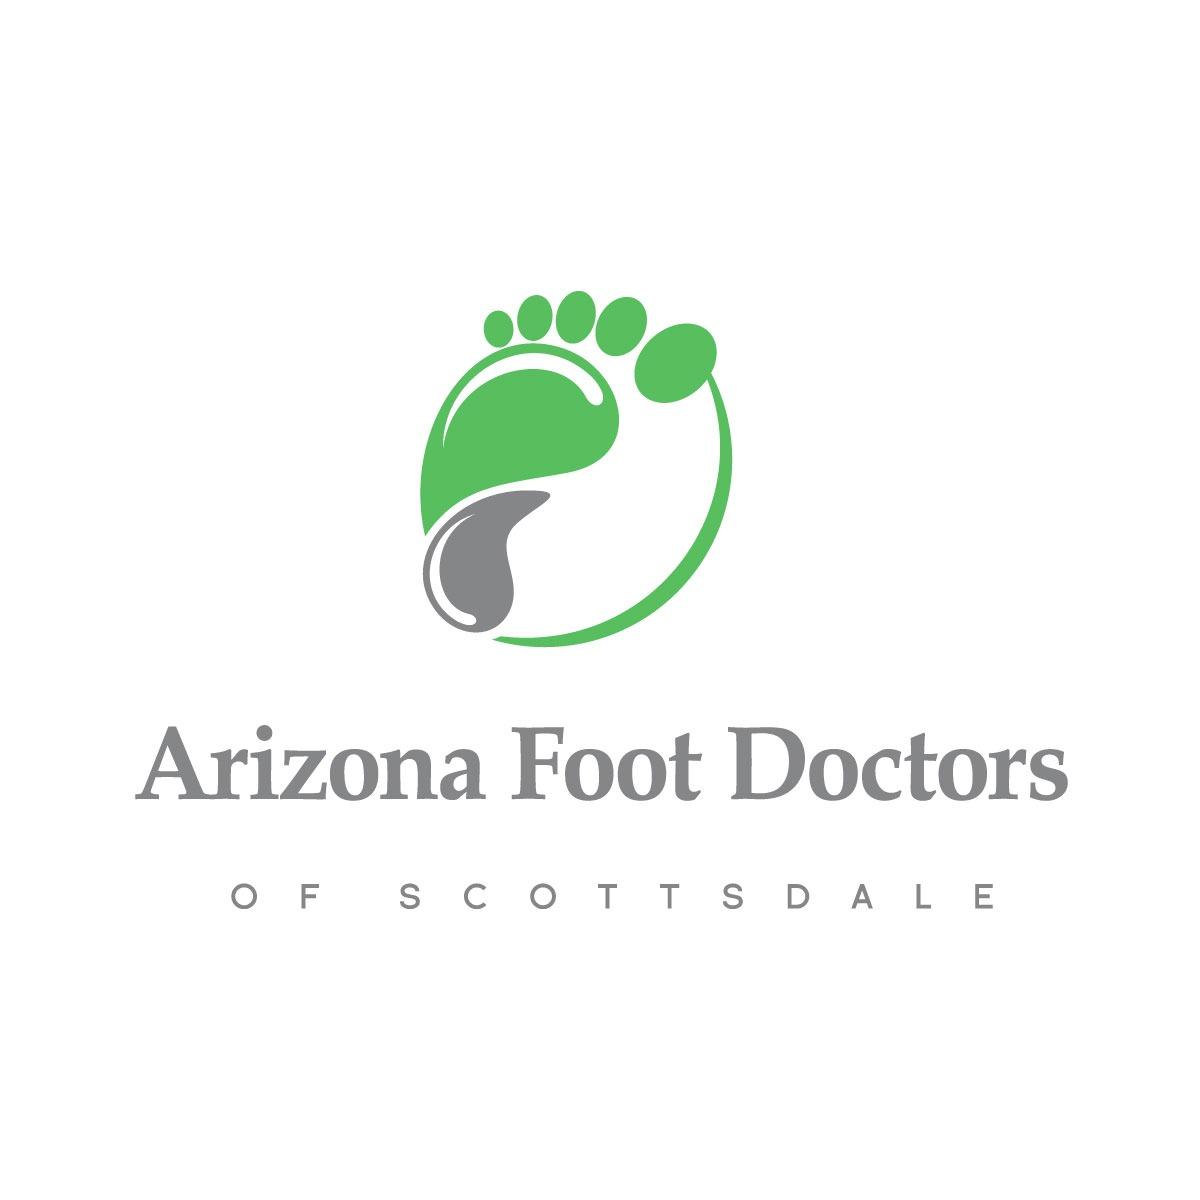 Arizona Foot Doctors Photo